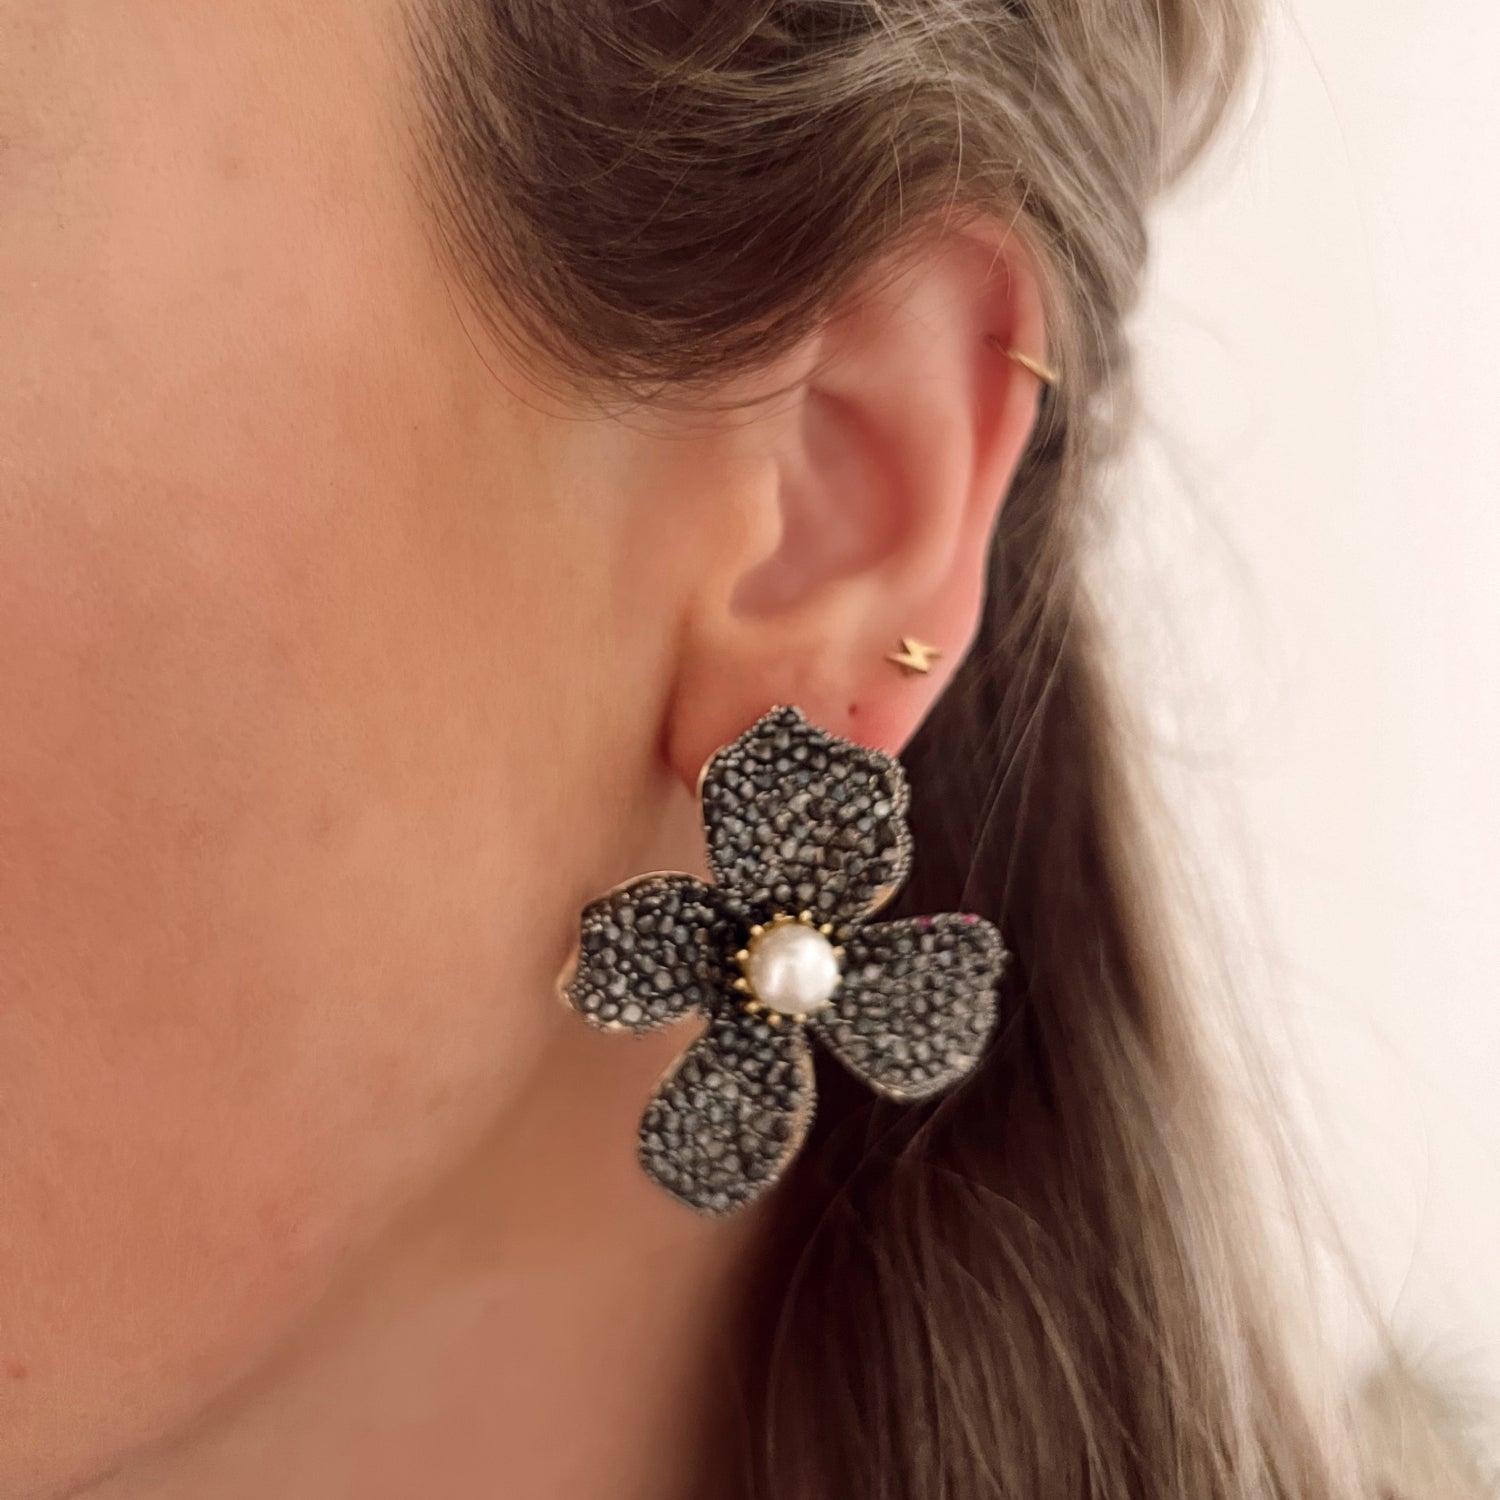 Zwarte statement oorbellen in de vorm van een bloem, ingelegd met steentjes. Afmetingen: 5 cm. Zwarte grote statement earrings bloem met steentjes. Grote oorbellen zwarte bloem.